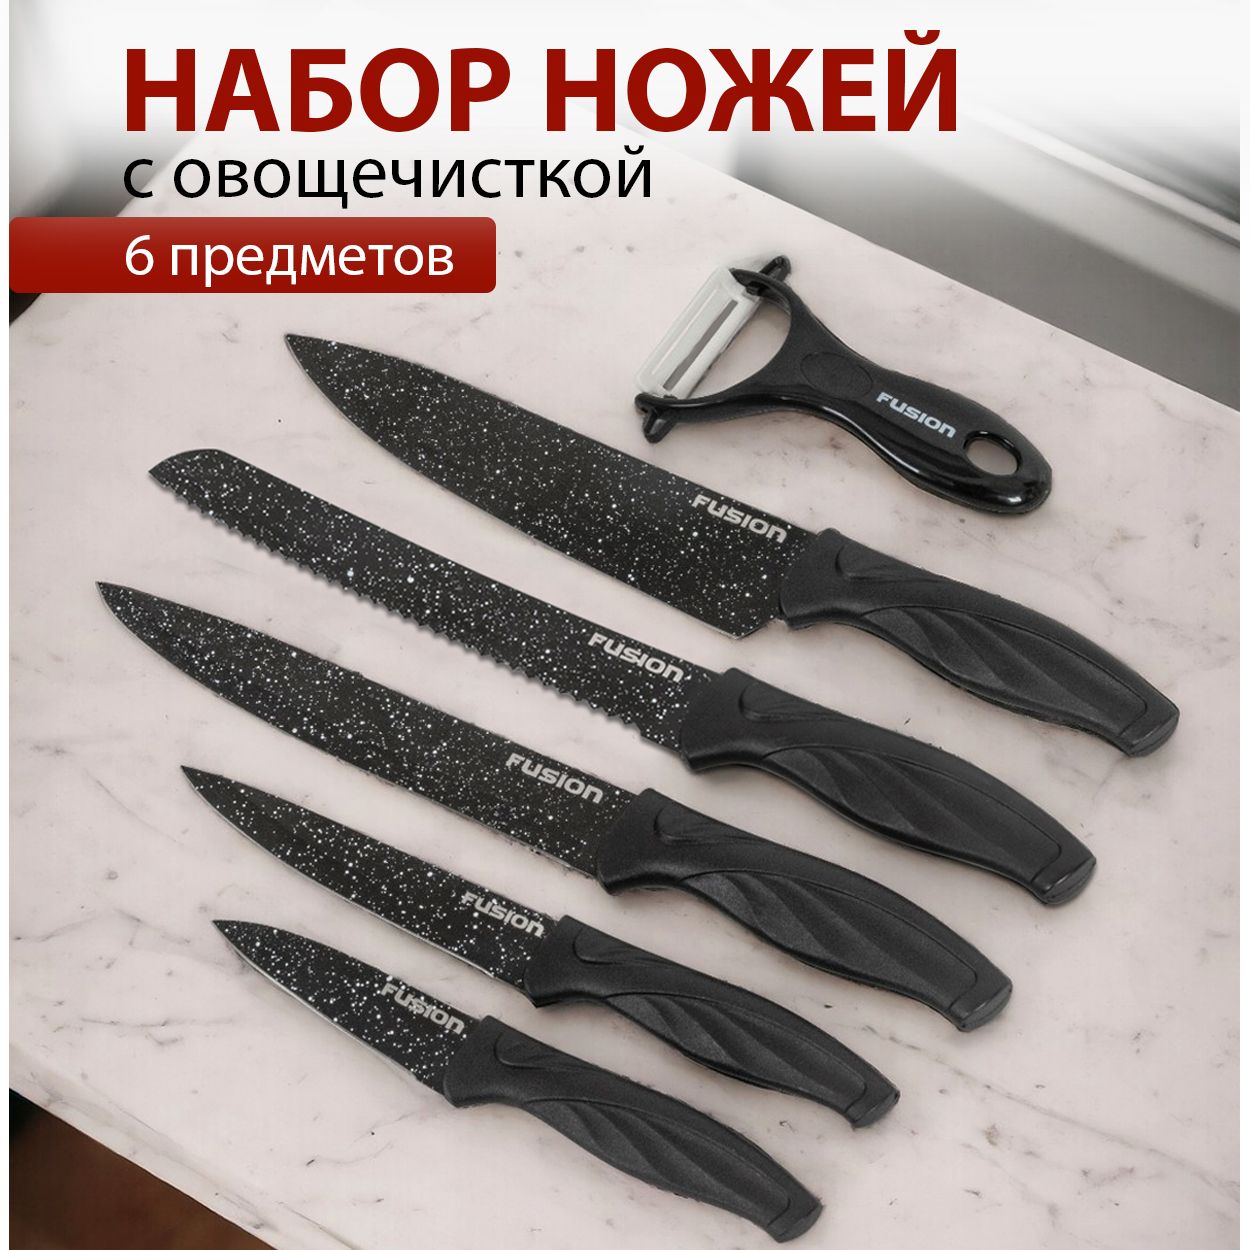 НаборкухонныхножейсовощечисткойFusionSKP6001,black(овощнойнож,универсальный,нождлянарезки,нождляхлеба,шеф-нож)